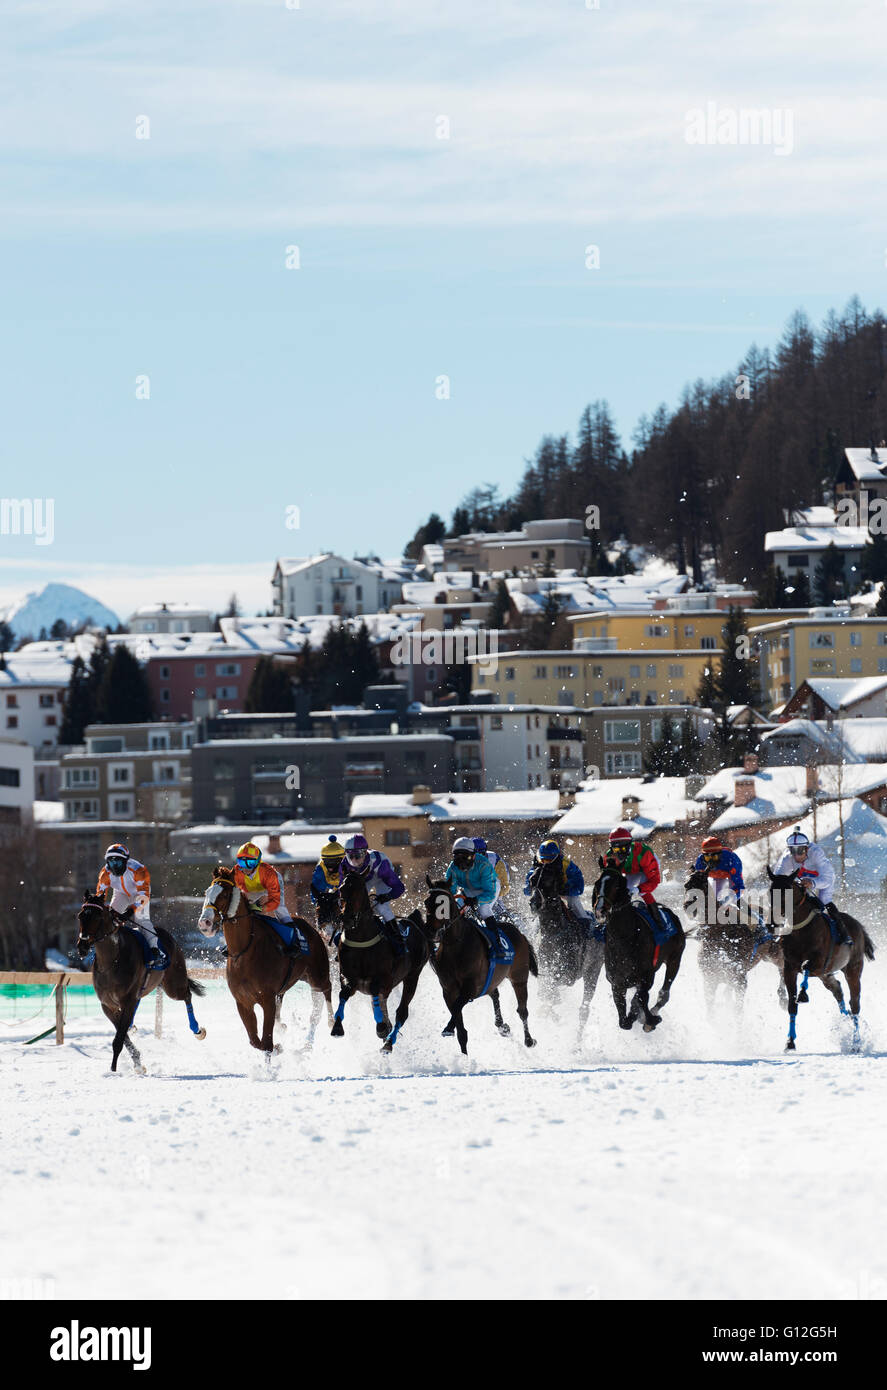 L'Europa, Svizzera, Grigioni, Engadina St Moritz in inverno, White Turf Concorso Ippico Internazionale Foto Stock